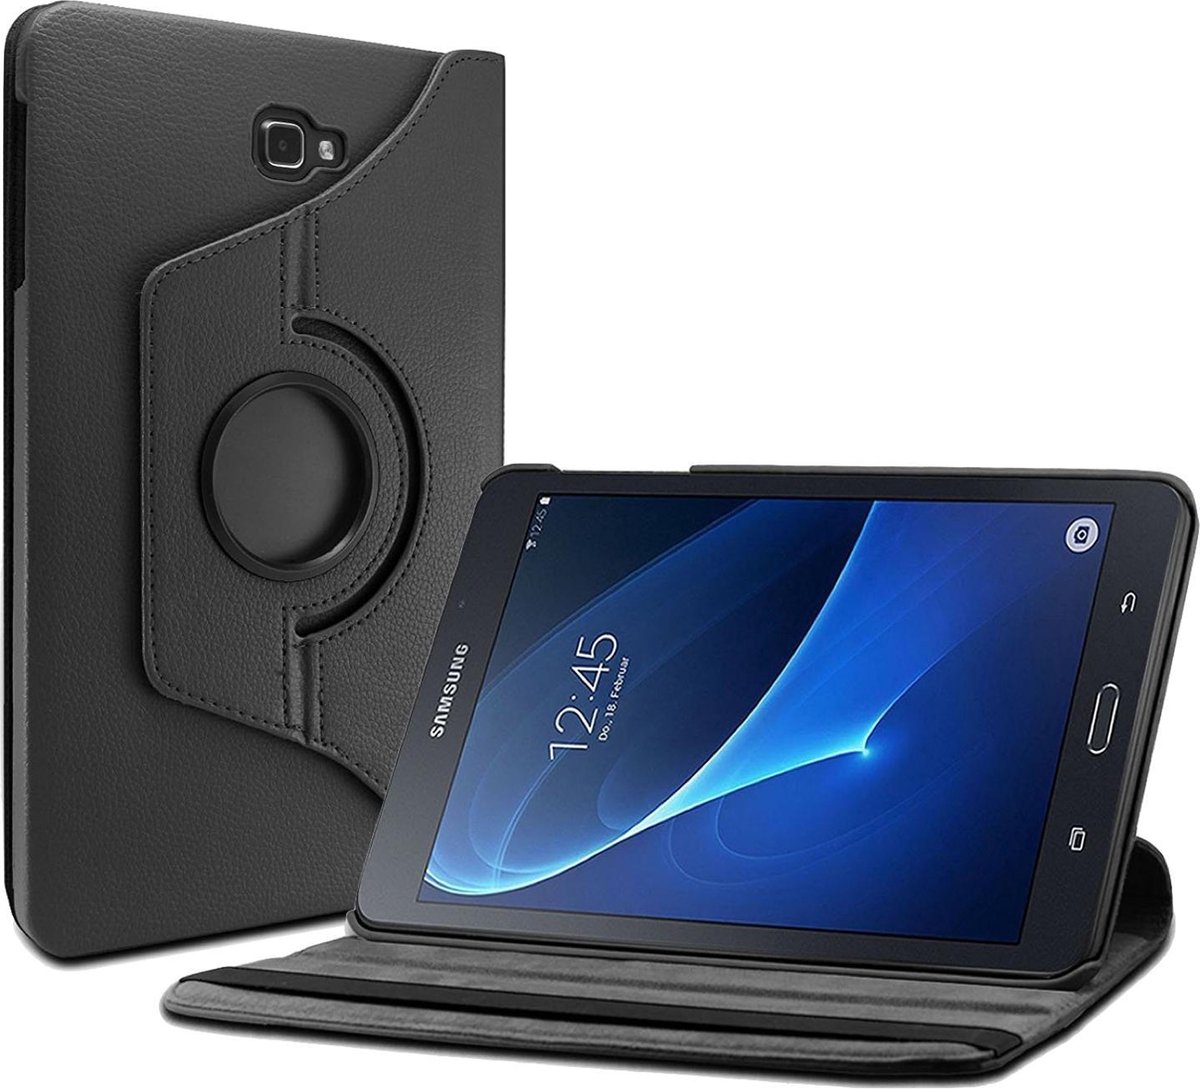 Samsung Galaxy Tab S2 9.7 - Leer Zwart Draaibare 360 Graden Cover Hoes - Book Case met Multi-Stand Rotatie